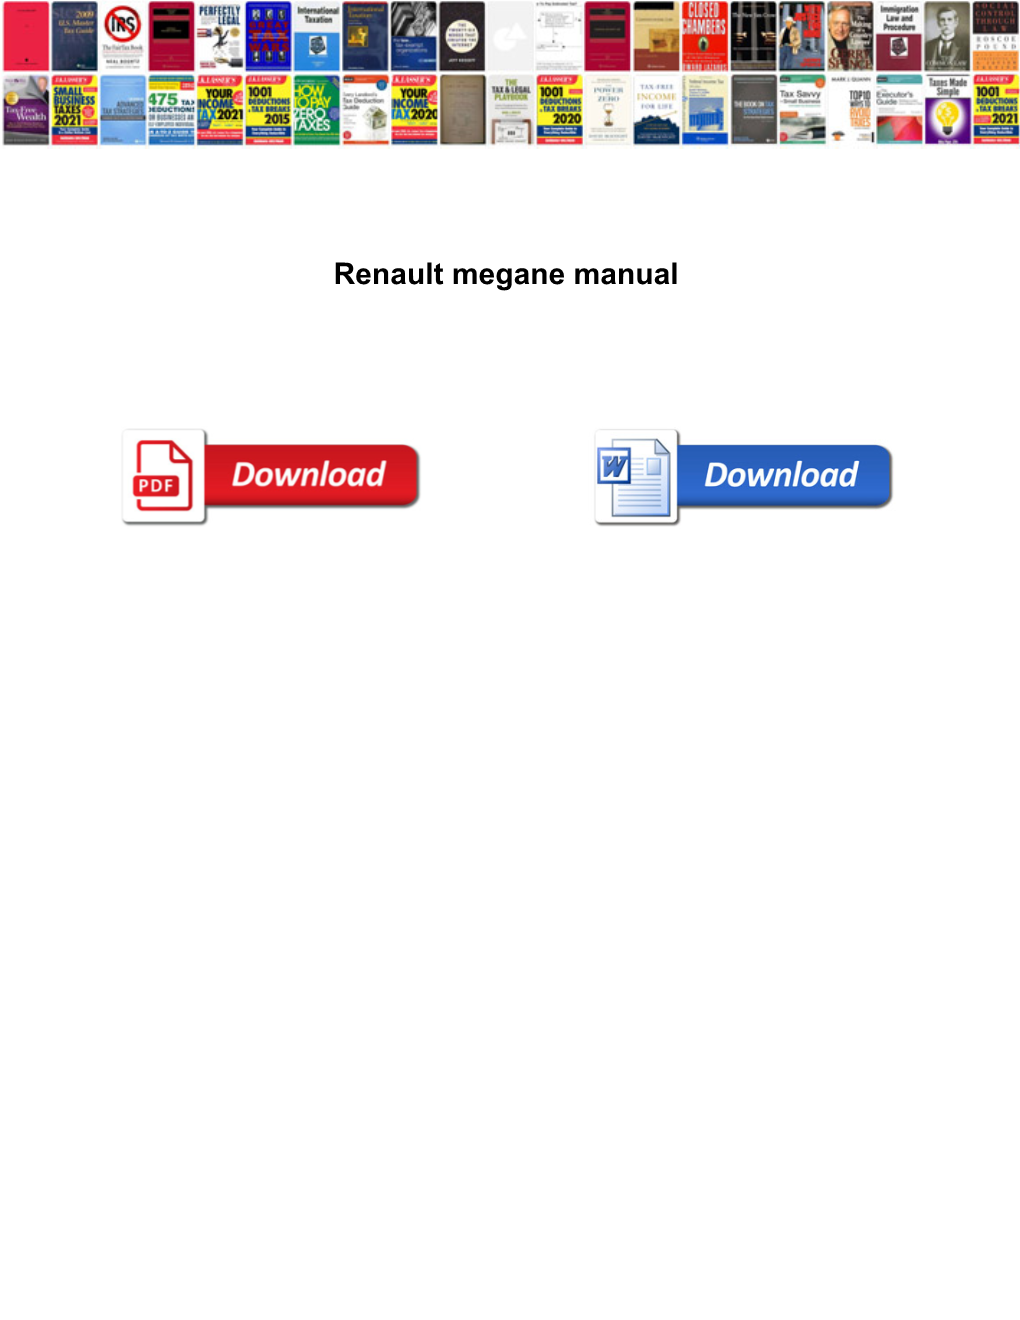 Renault Megane Pdf Manual (PDF Format)